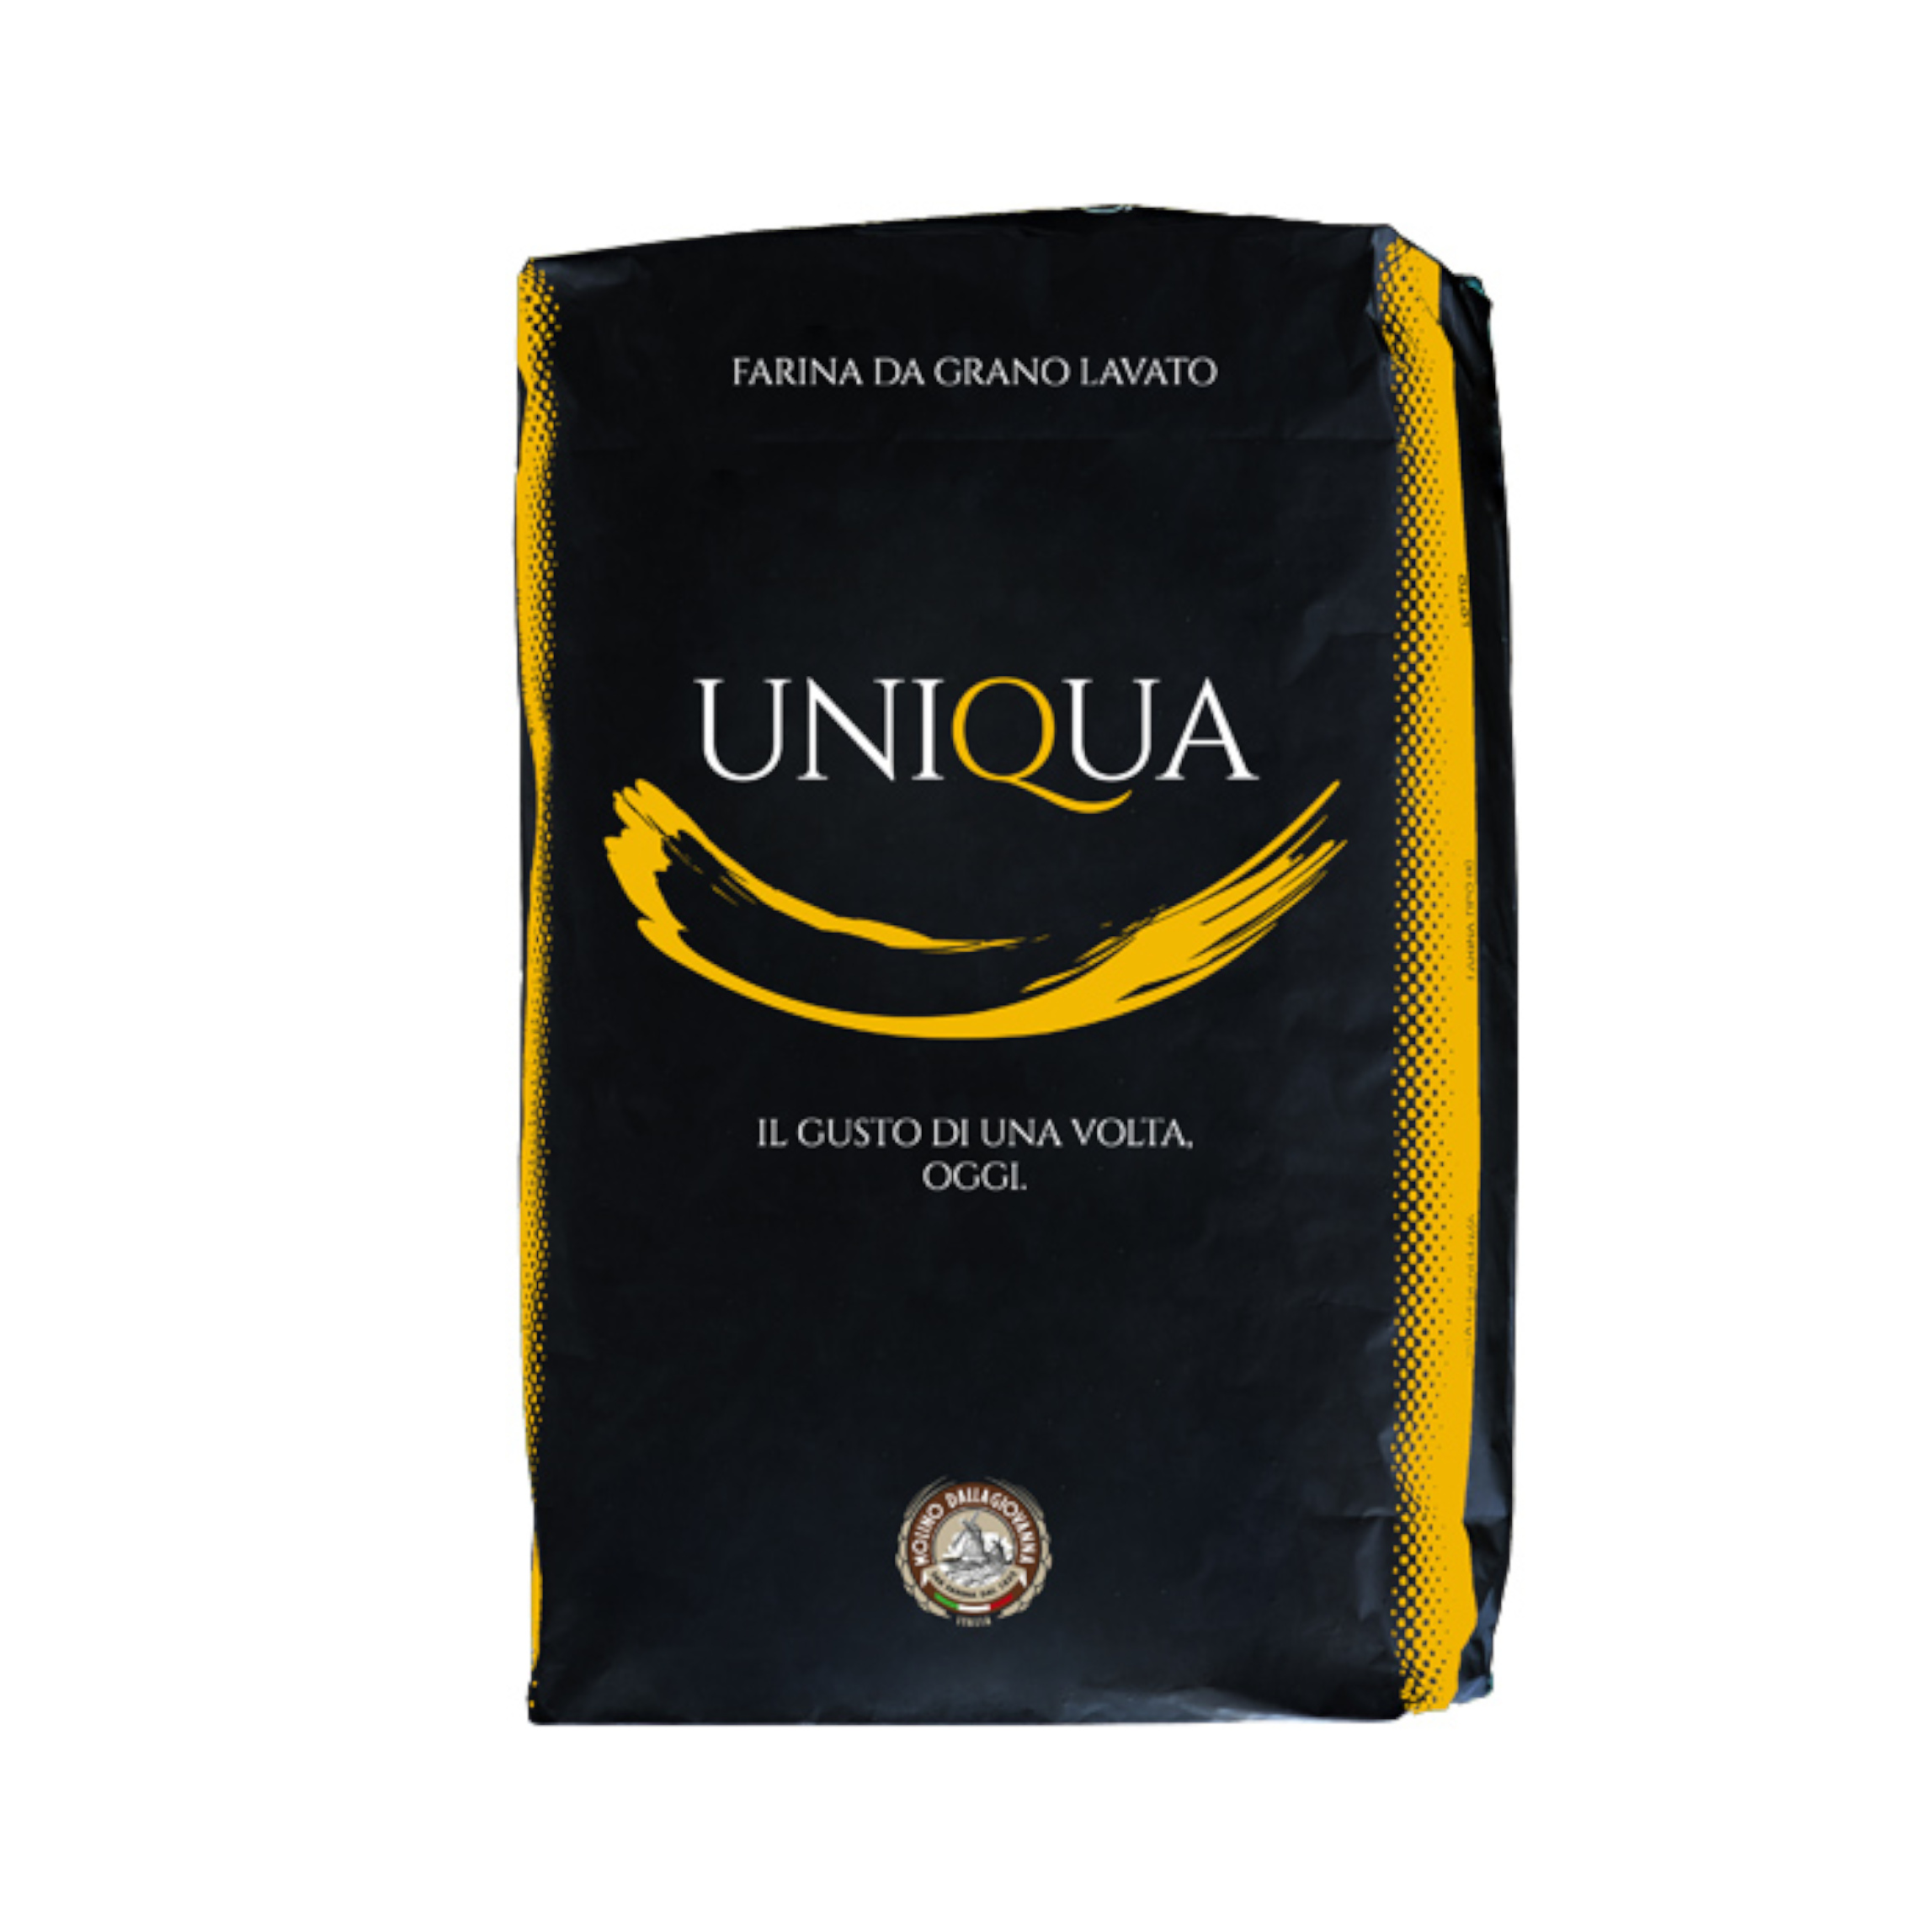 Farina “1” Uniqua Gialla W300 sacchetto da 1kg